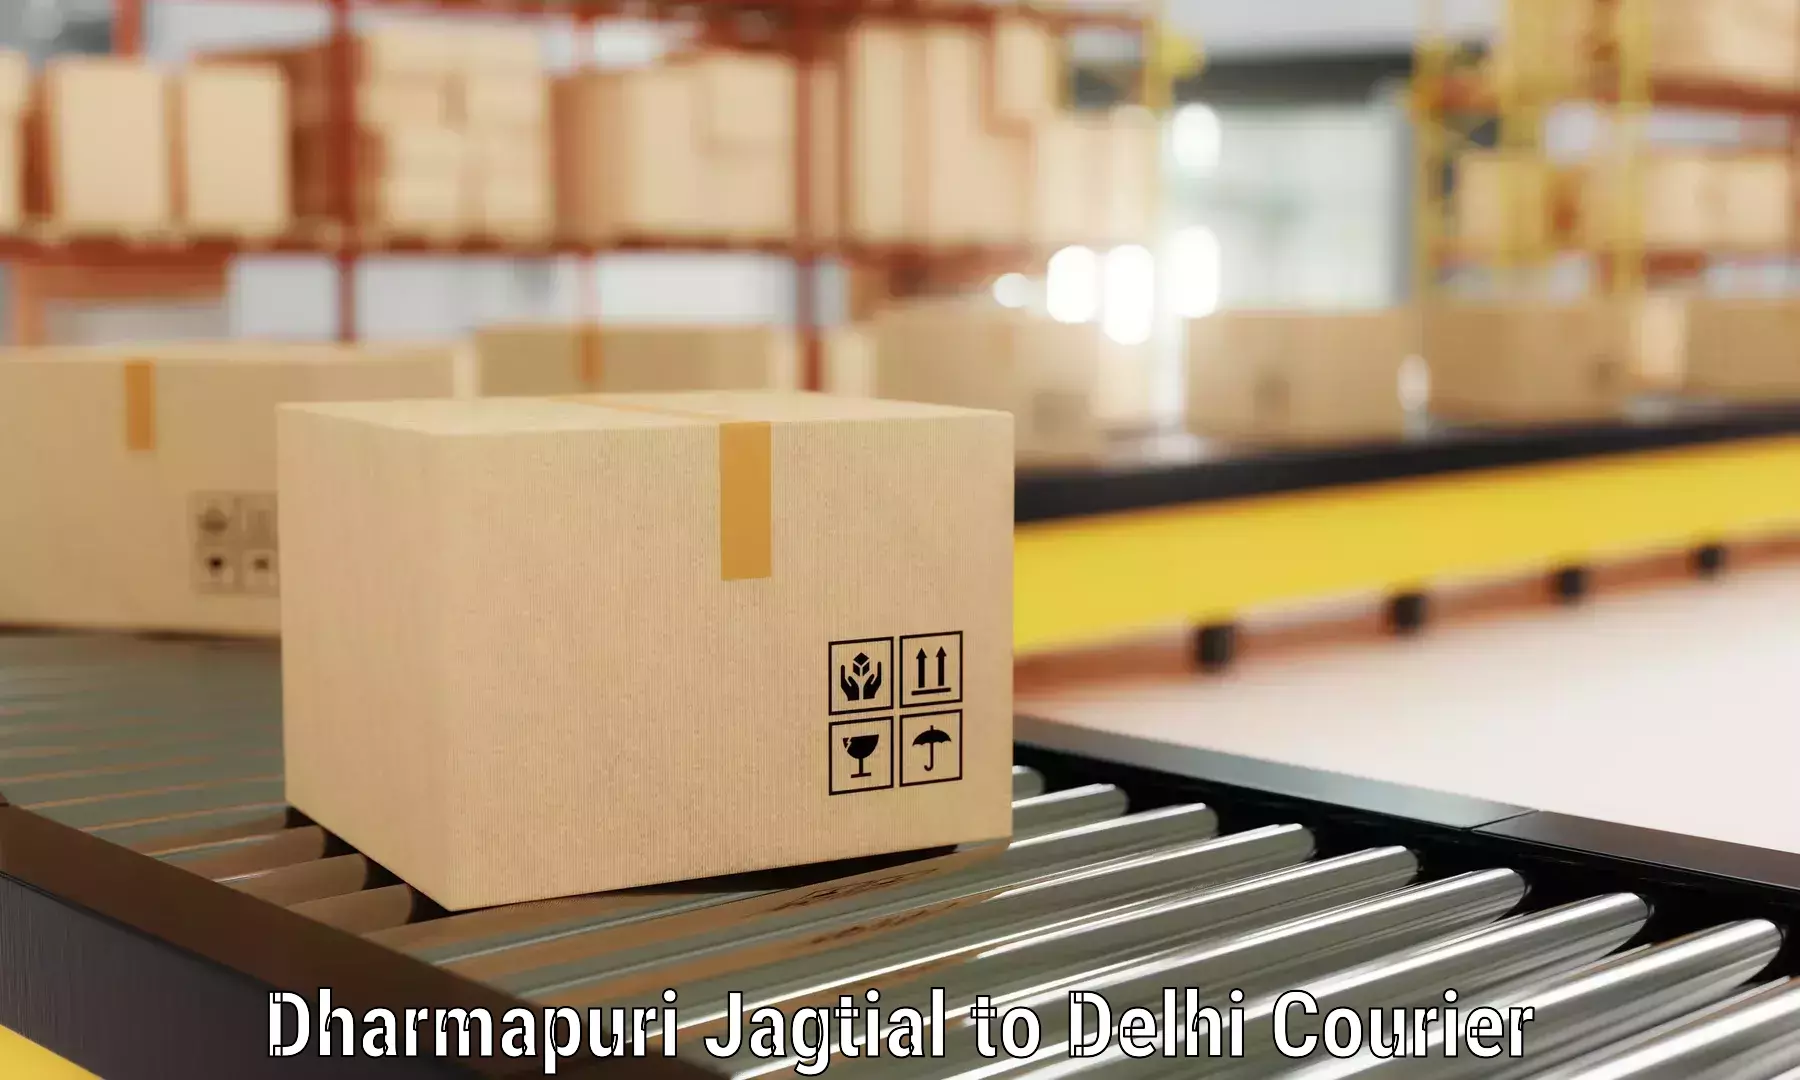 Household goods transport service Dharmapuri Jagtial to Jhilmil